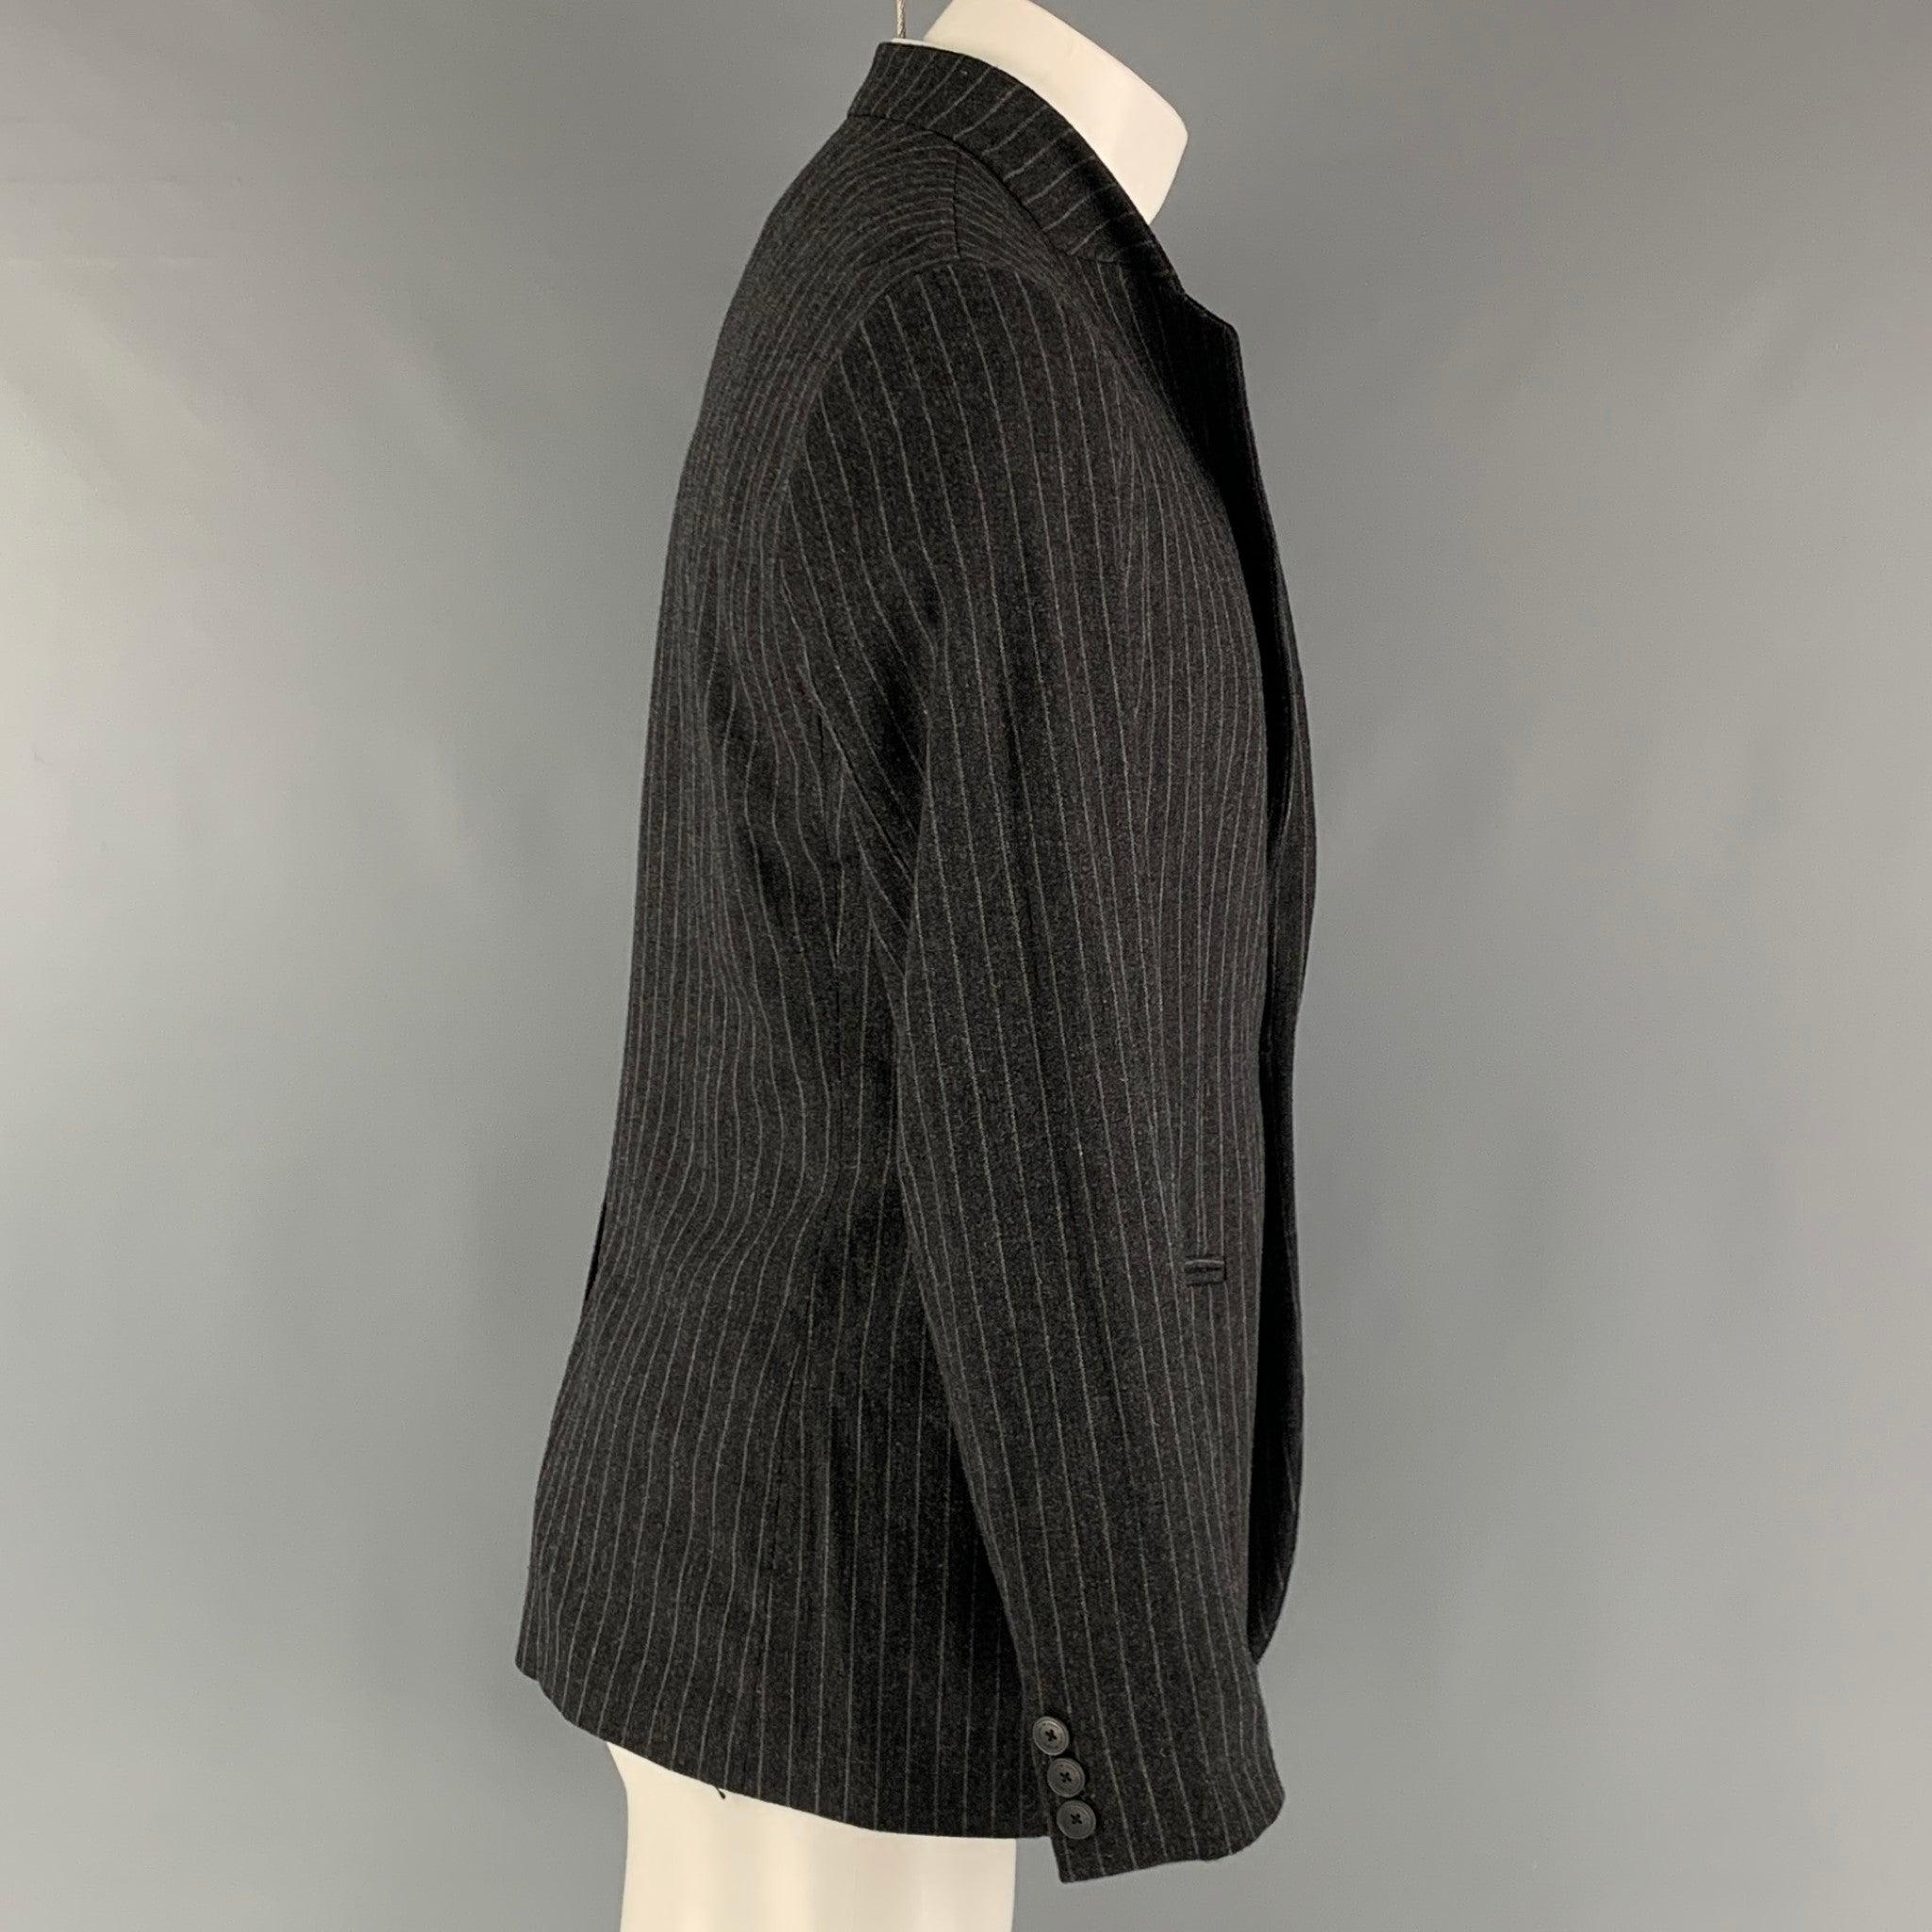 Le manteau sport 'Johnny Line' d'EMPORIO ARMANI se compose d'une doublure intégrale en laine rayée gris et anthracite, d'un col montant, de poches passepoilées, d'une seule fente au dos et d'une fermeture à bouton unique. Fabriquées en Italie.